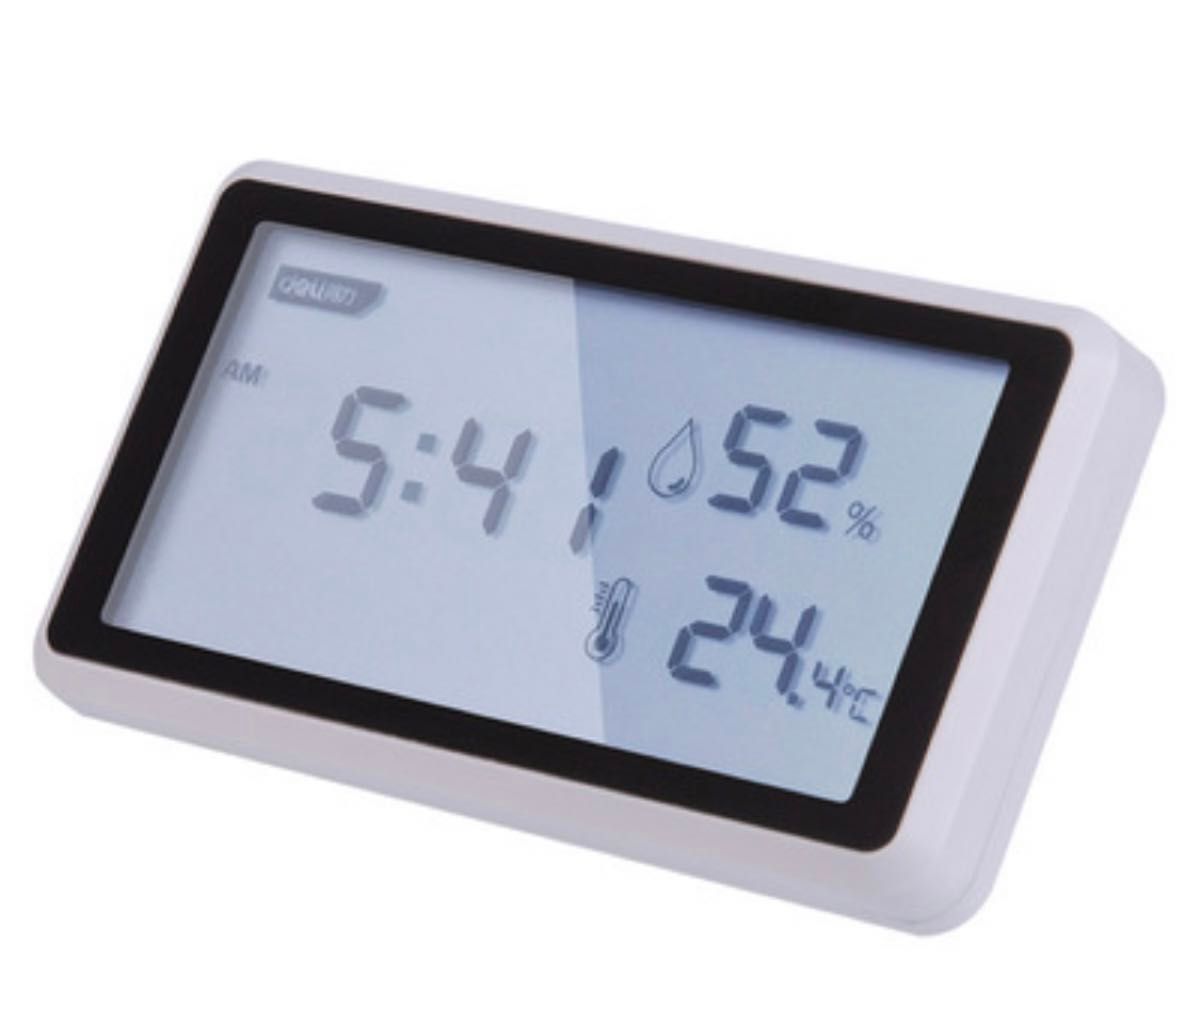 デジタル温度計 湿度計 卓上 おしゃれ 時計 温室計 室温計